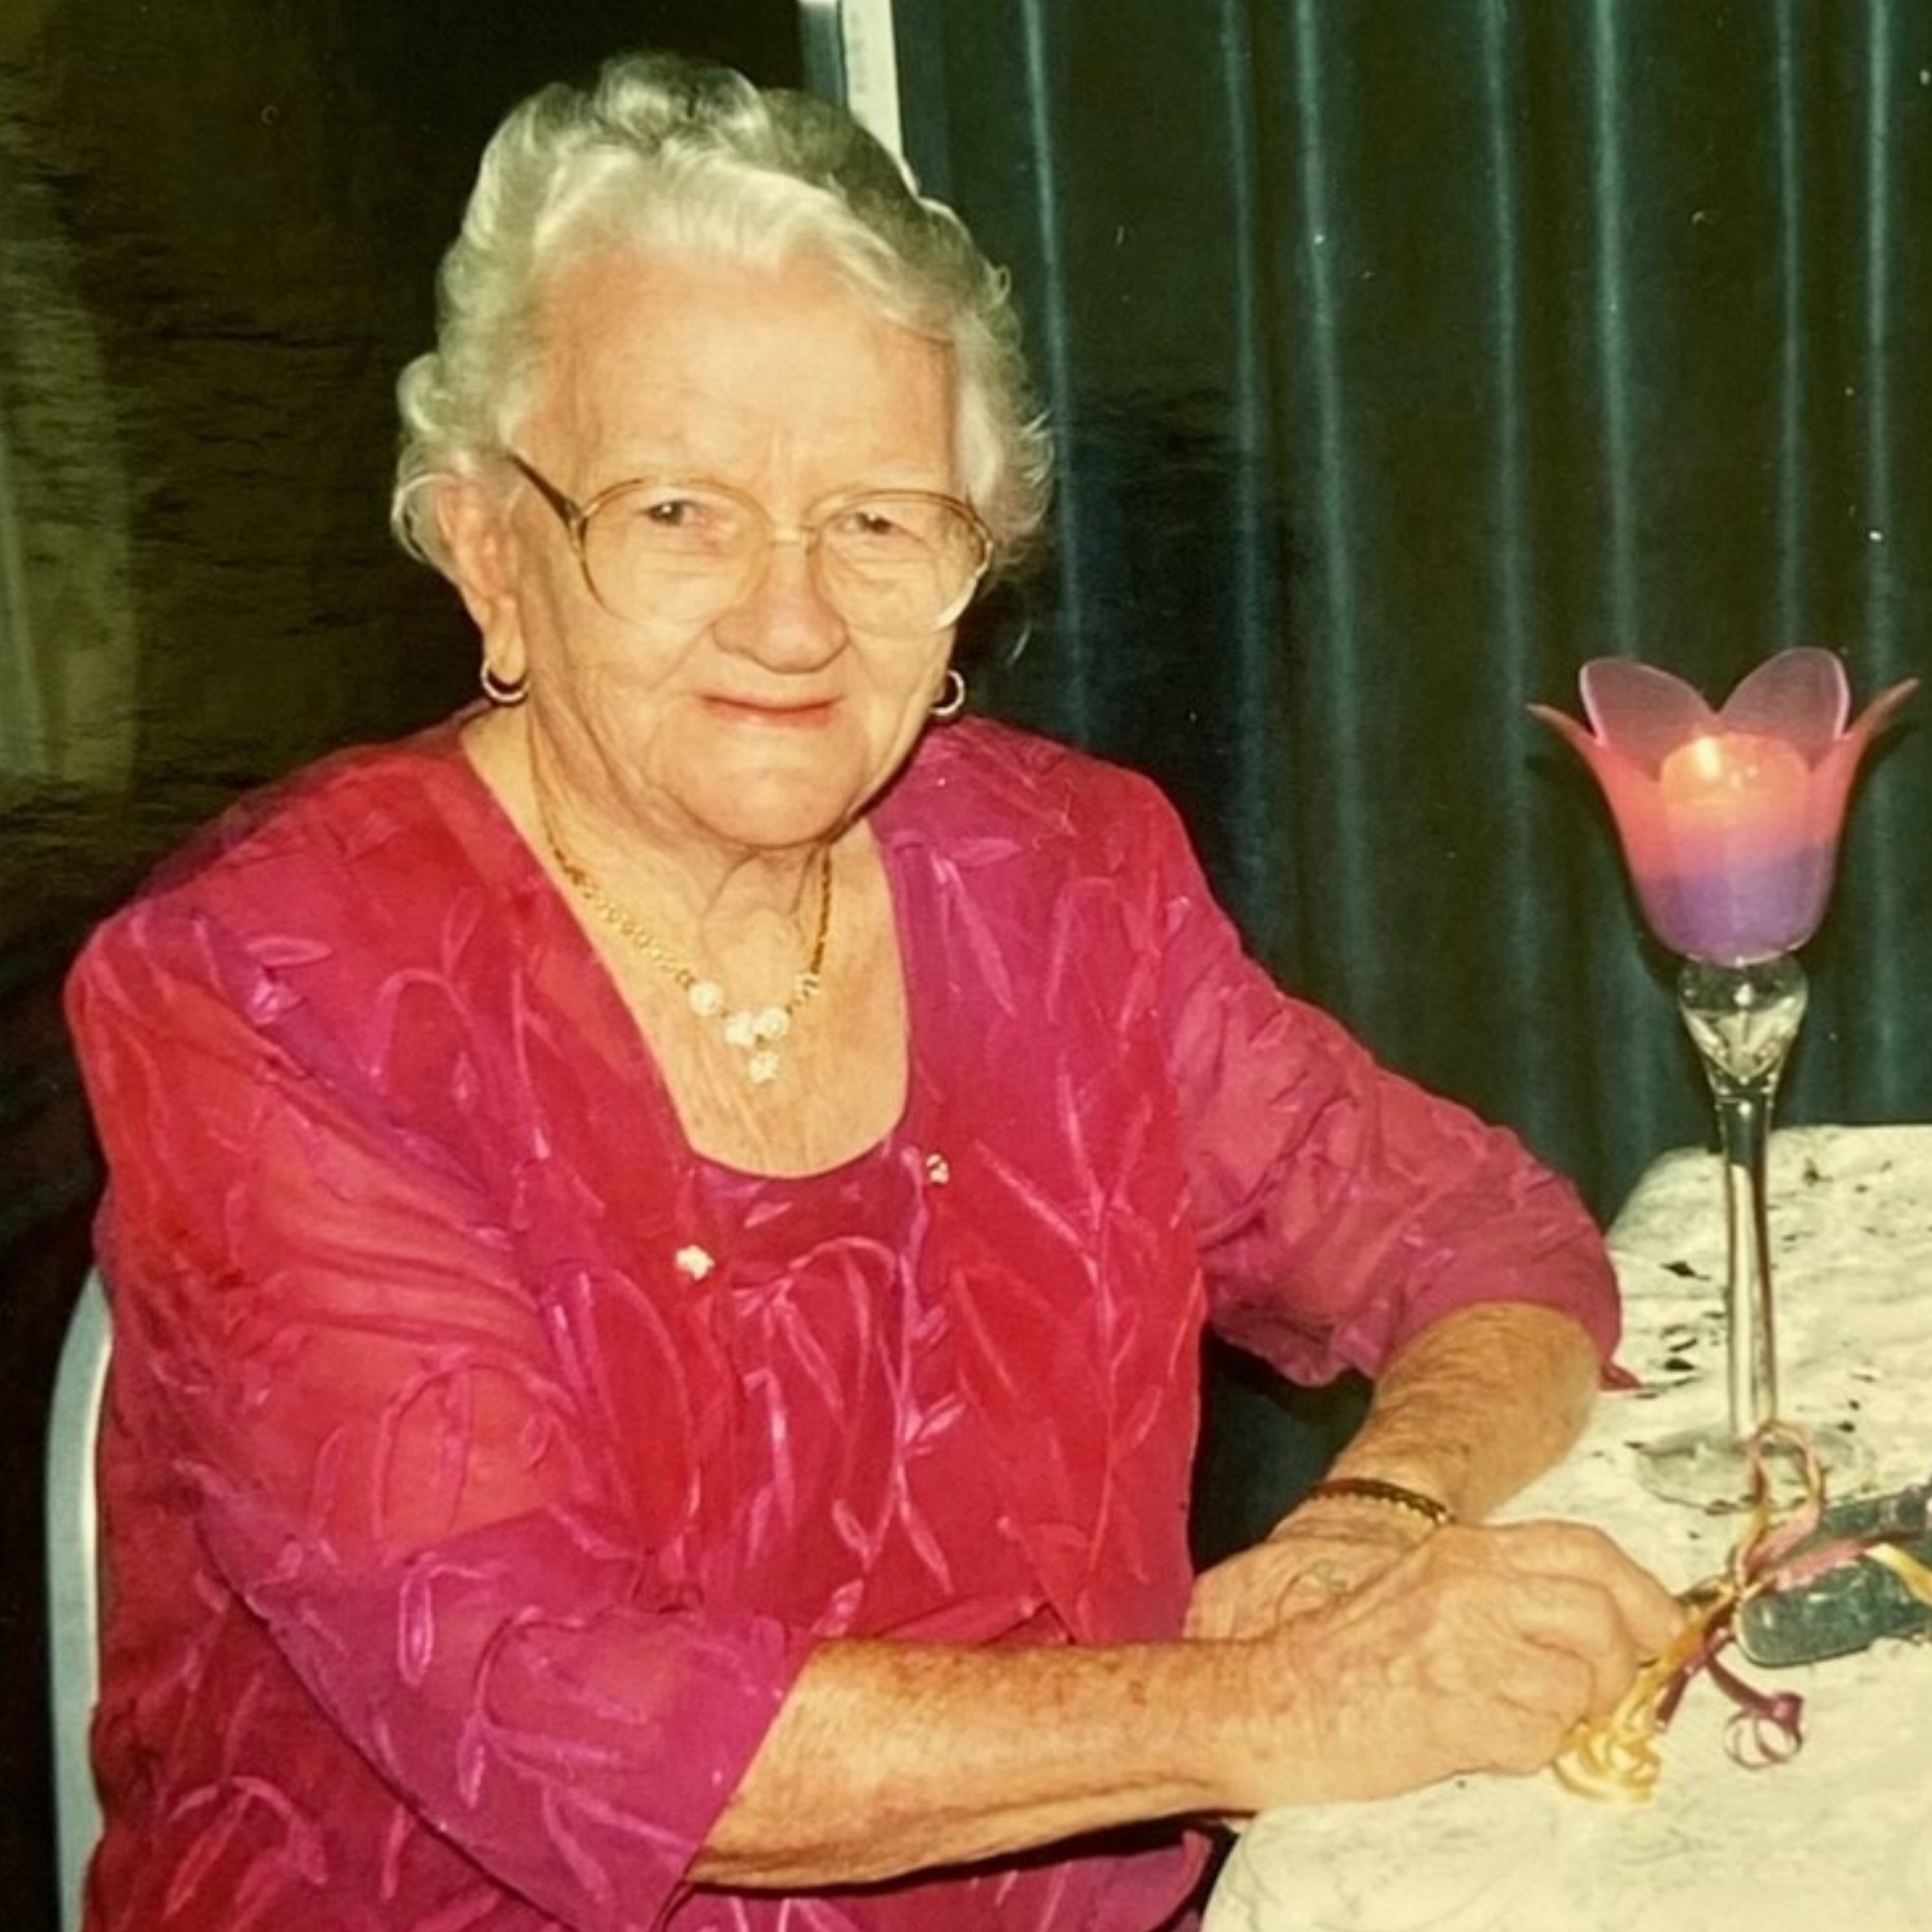 Ethel Moody